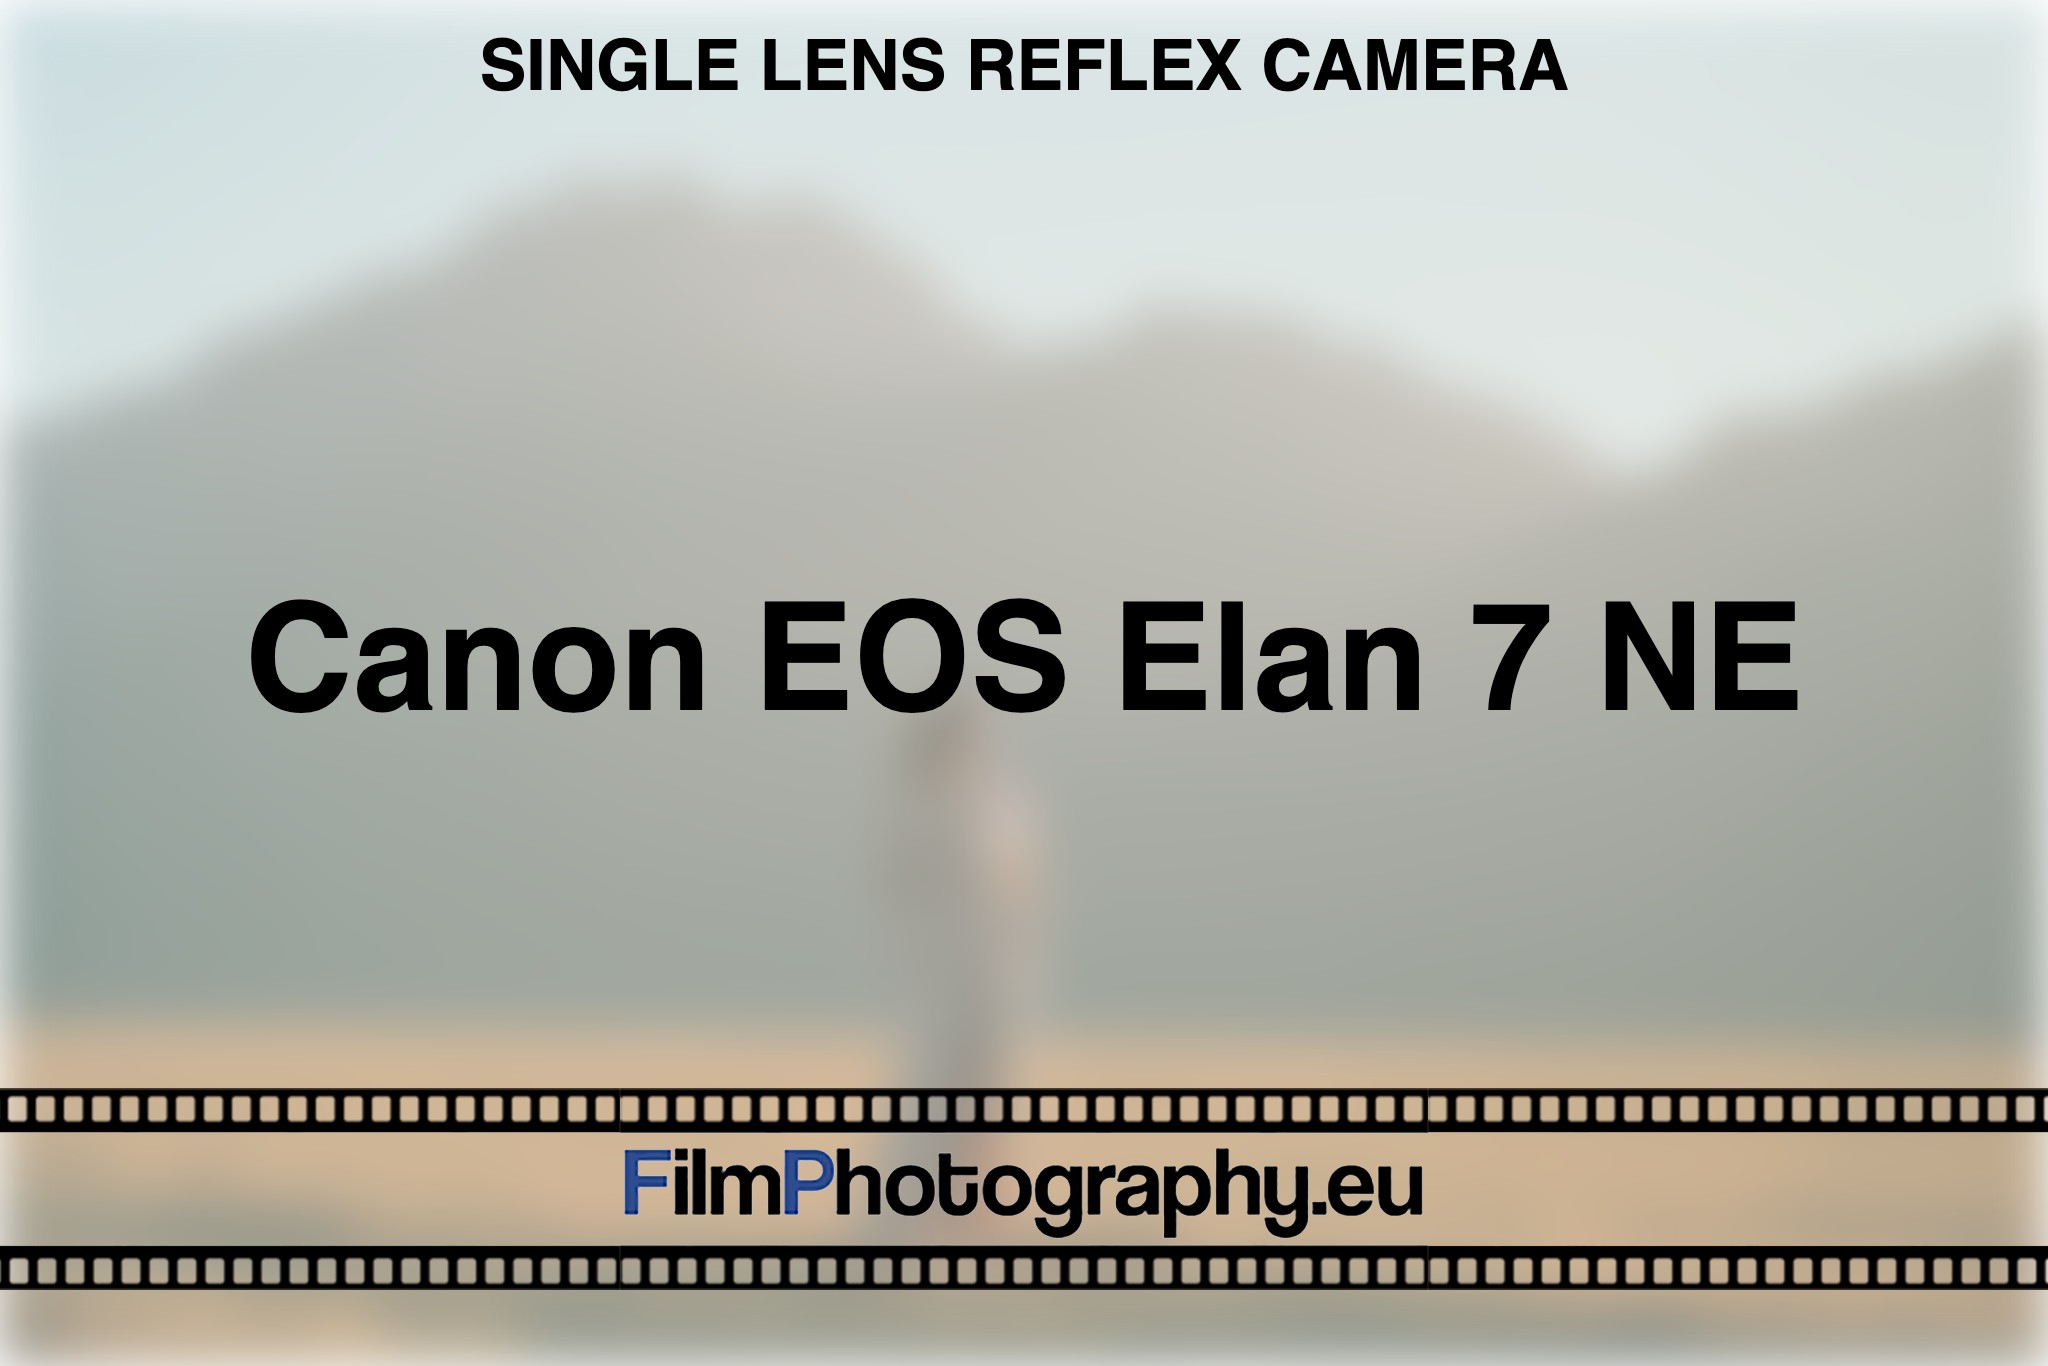 canon-eos-elan-7-ne-single-lens-reflex-camera-bnv